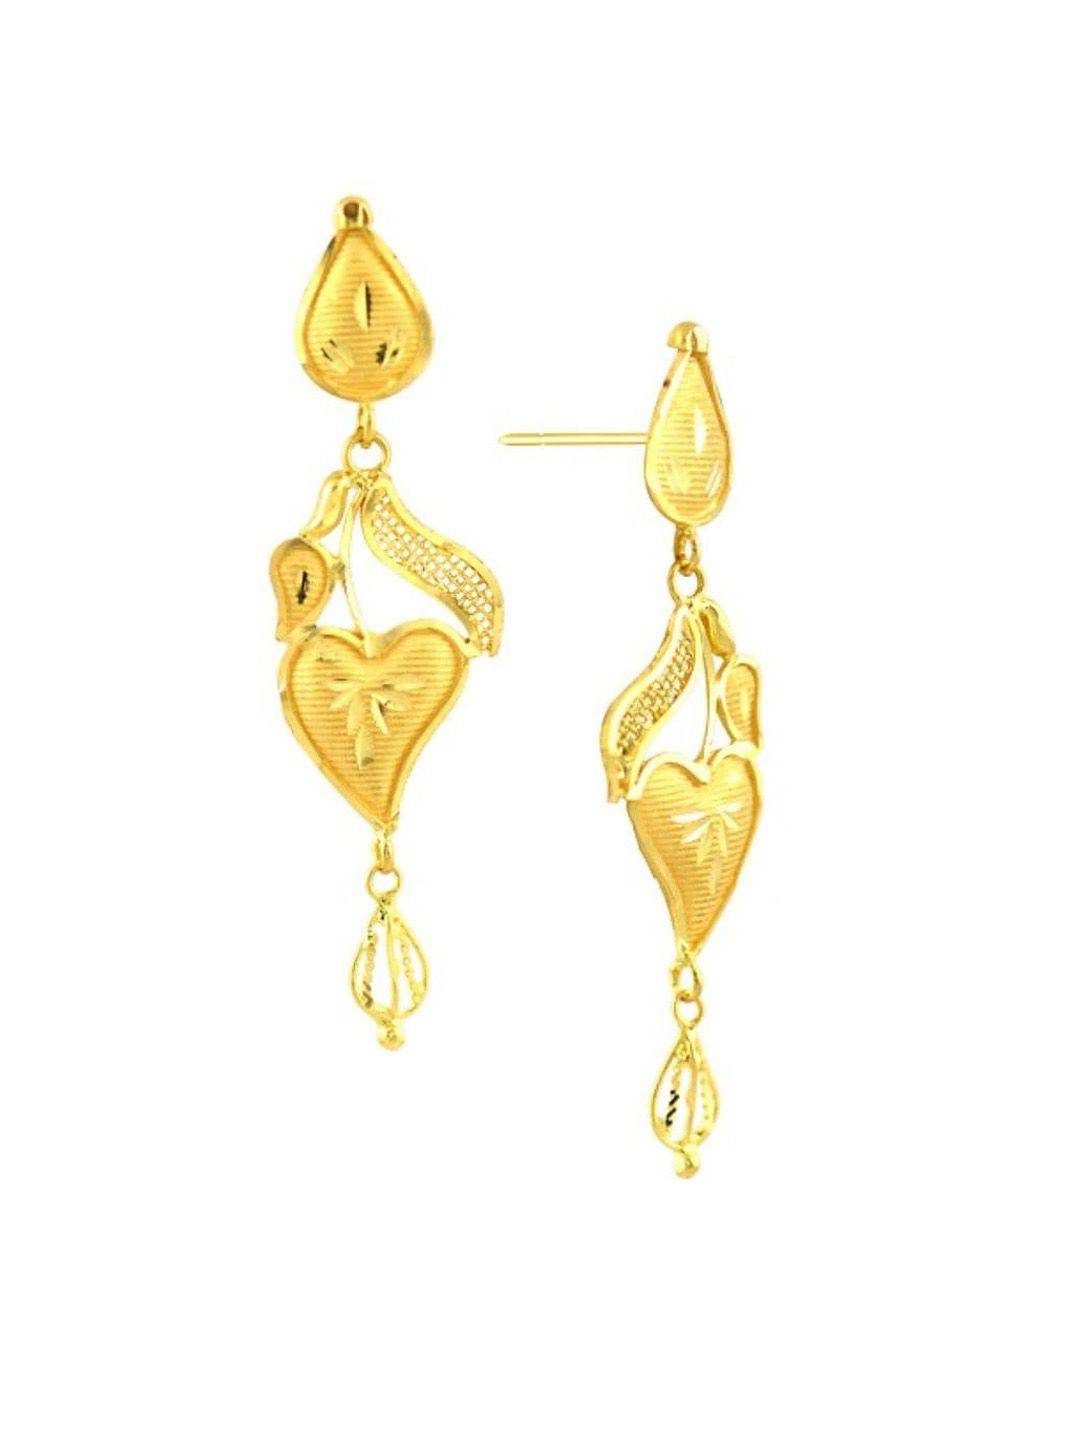 senco 22kt gold drop earrings-3.4gm